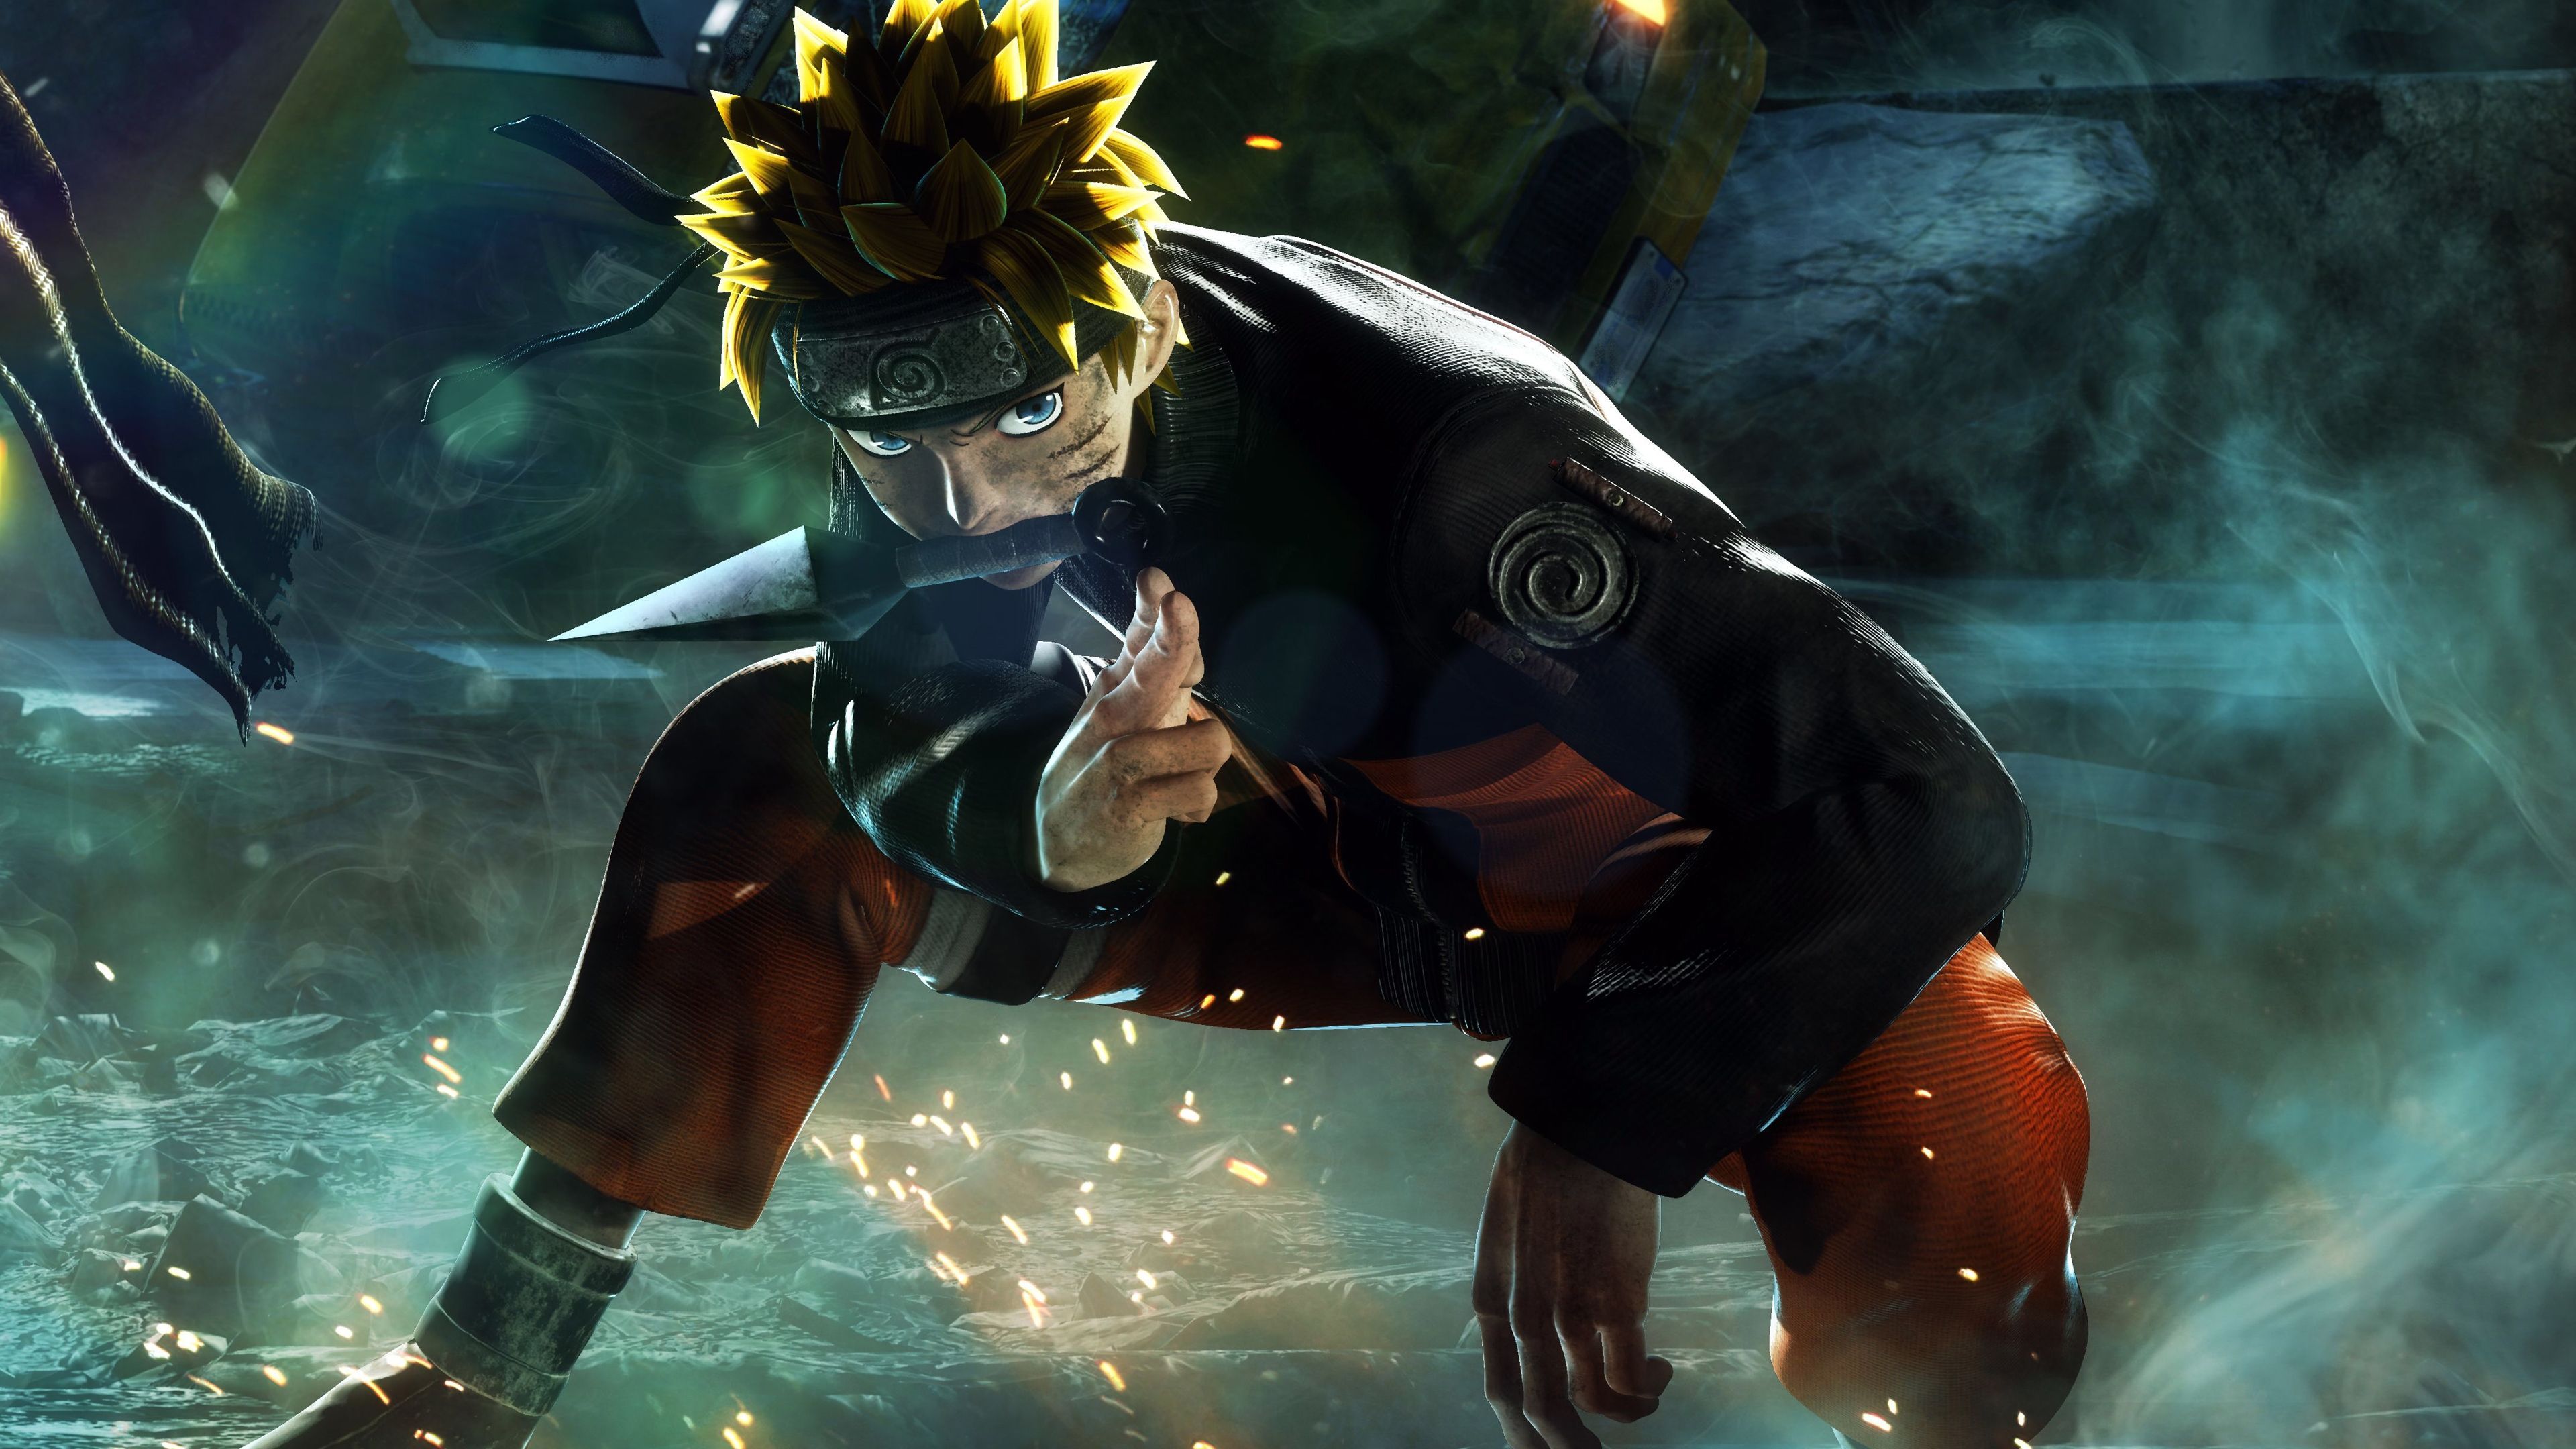 Với hình nền Naruto 4K, bạn sẽ được trải nghiệm một thế giới anime tuyệt đẹp với độ phân giải cực cao. Cùng Naruto, bạn sẽ được hòa mình trong những trận chiến đầy kịch tính và hành trình tìm kiếm ý nghĩa của cuộc đời. Những hình ảnh đẹp tuyệt vời và màu sắc phong phú chắc chắn sẽ khiến bạn thành đồng đội của Naruto.